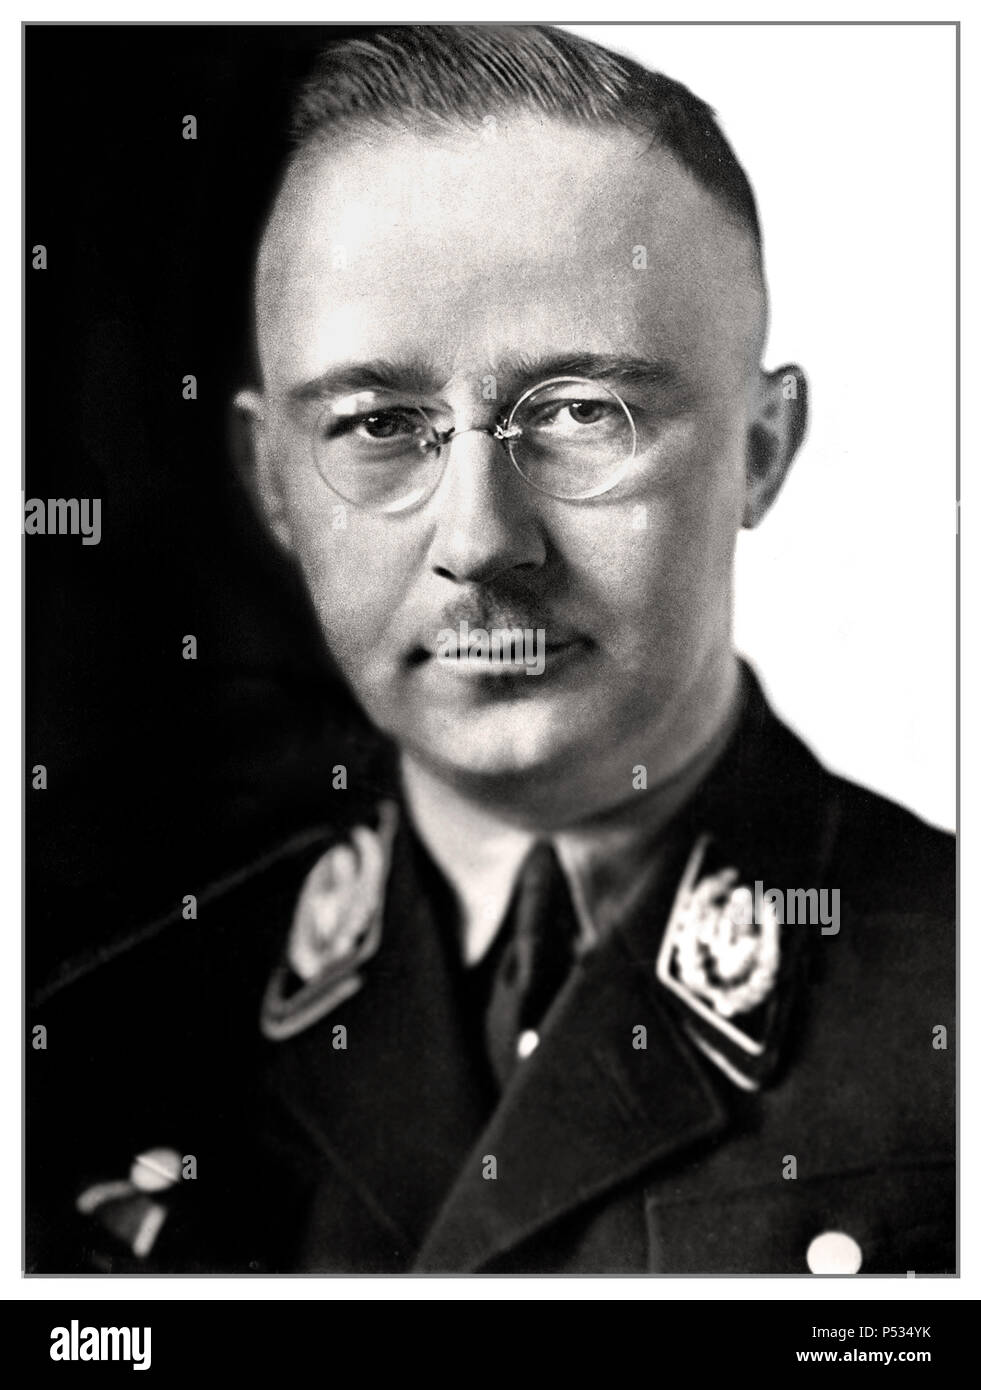 1940 WW2 Heinrich Himmler ritratto formale nelle Waffen SS uniforme nazionale tedesca politico socialista nazista comandante militare di polizia segreta. Himmler era uno degli uomini più potenti nella Germania nazista e una delle persone più direttamente responsabili per l'olocausto. Agevolato il genocidio in tutta Europa e l'Oriente. Suicida nel 1945 dopo essere stato catturato in fuga sotto un'altra identità. Foto Stock